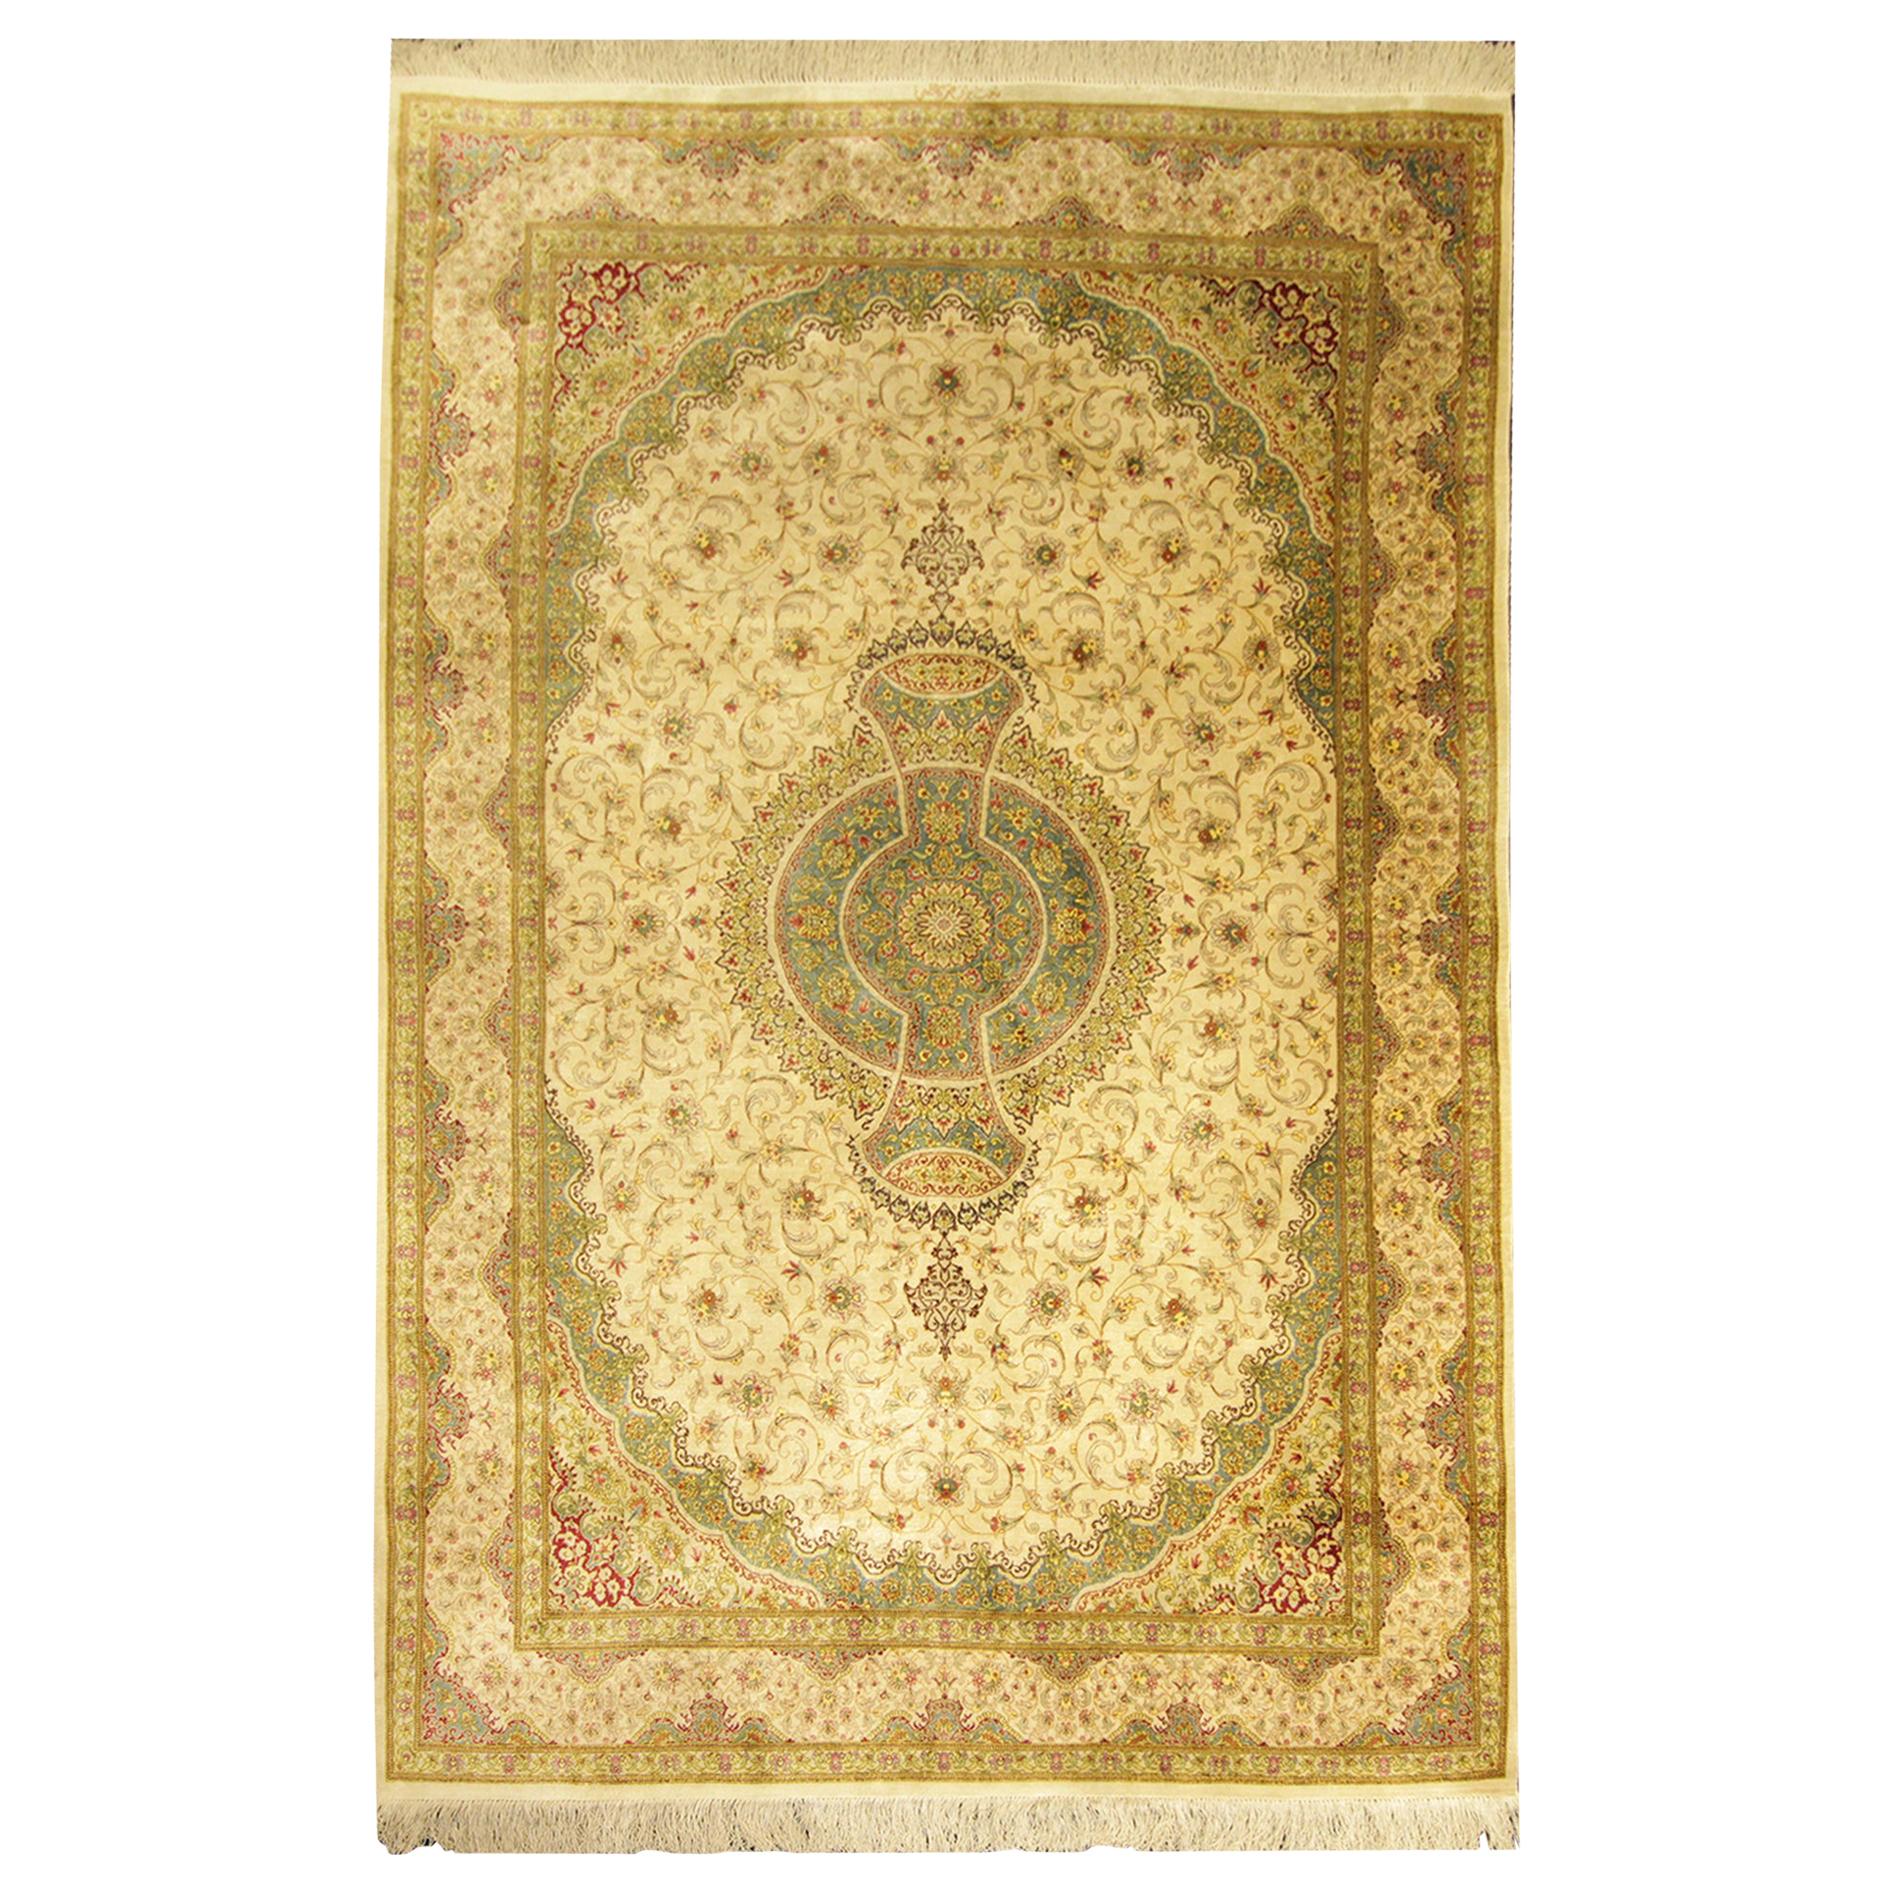 Handgefertigter türkischer Seidenteppich, traditioneller grüner orientalischer Teppich